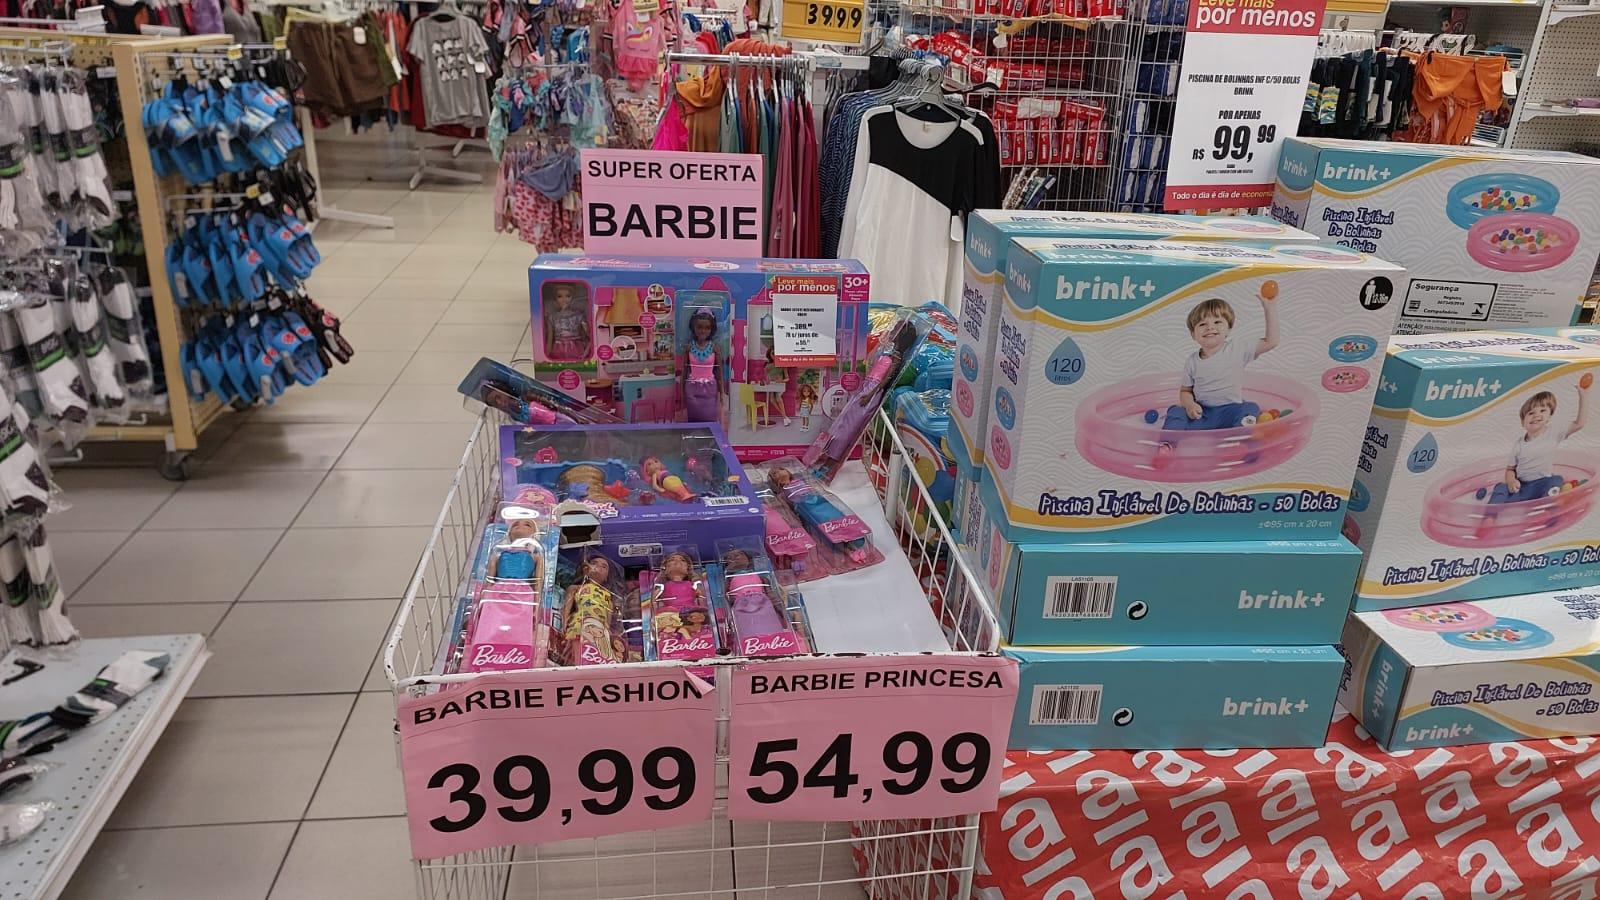 20 Unidades Roupinhas Roupas Boneca Barbie Brarato em Promoção na Americanas